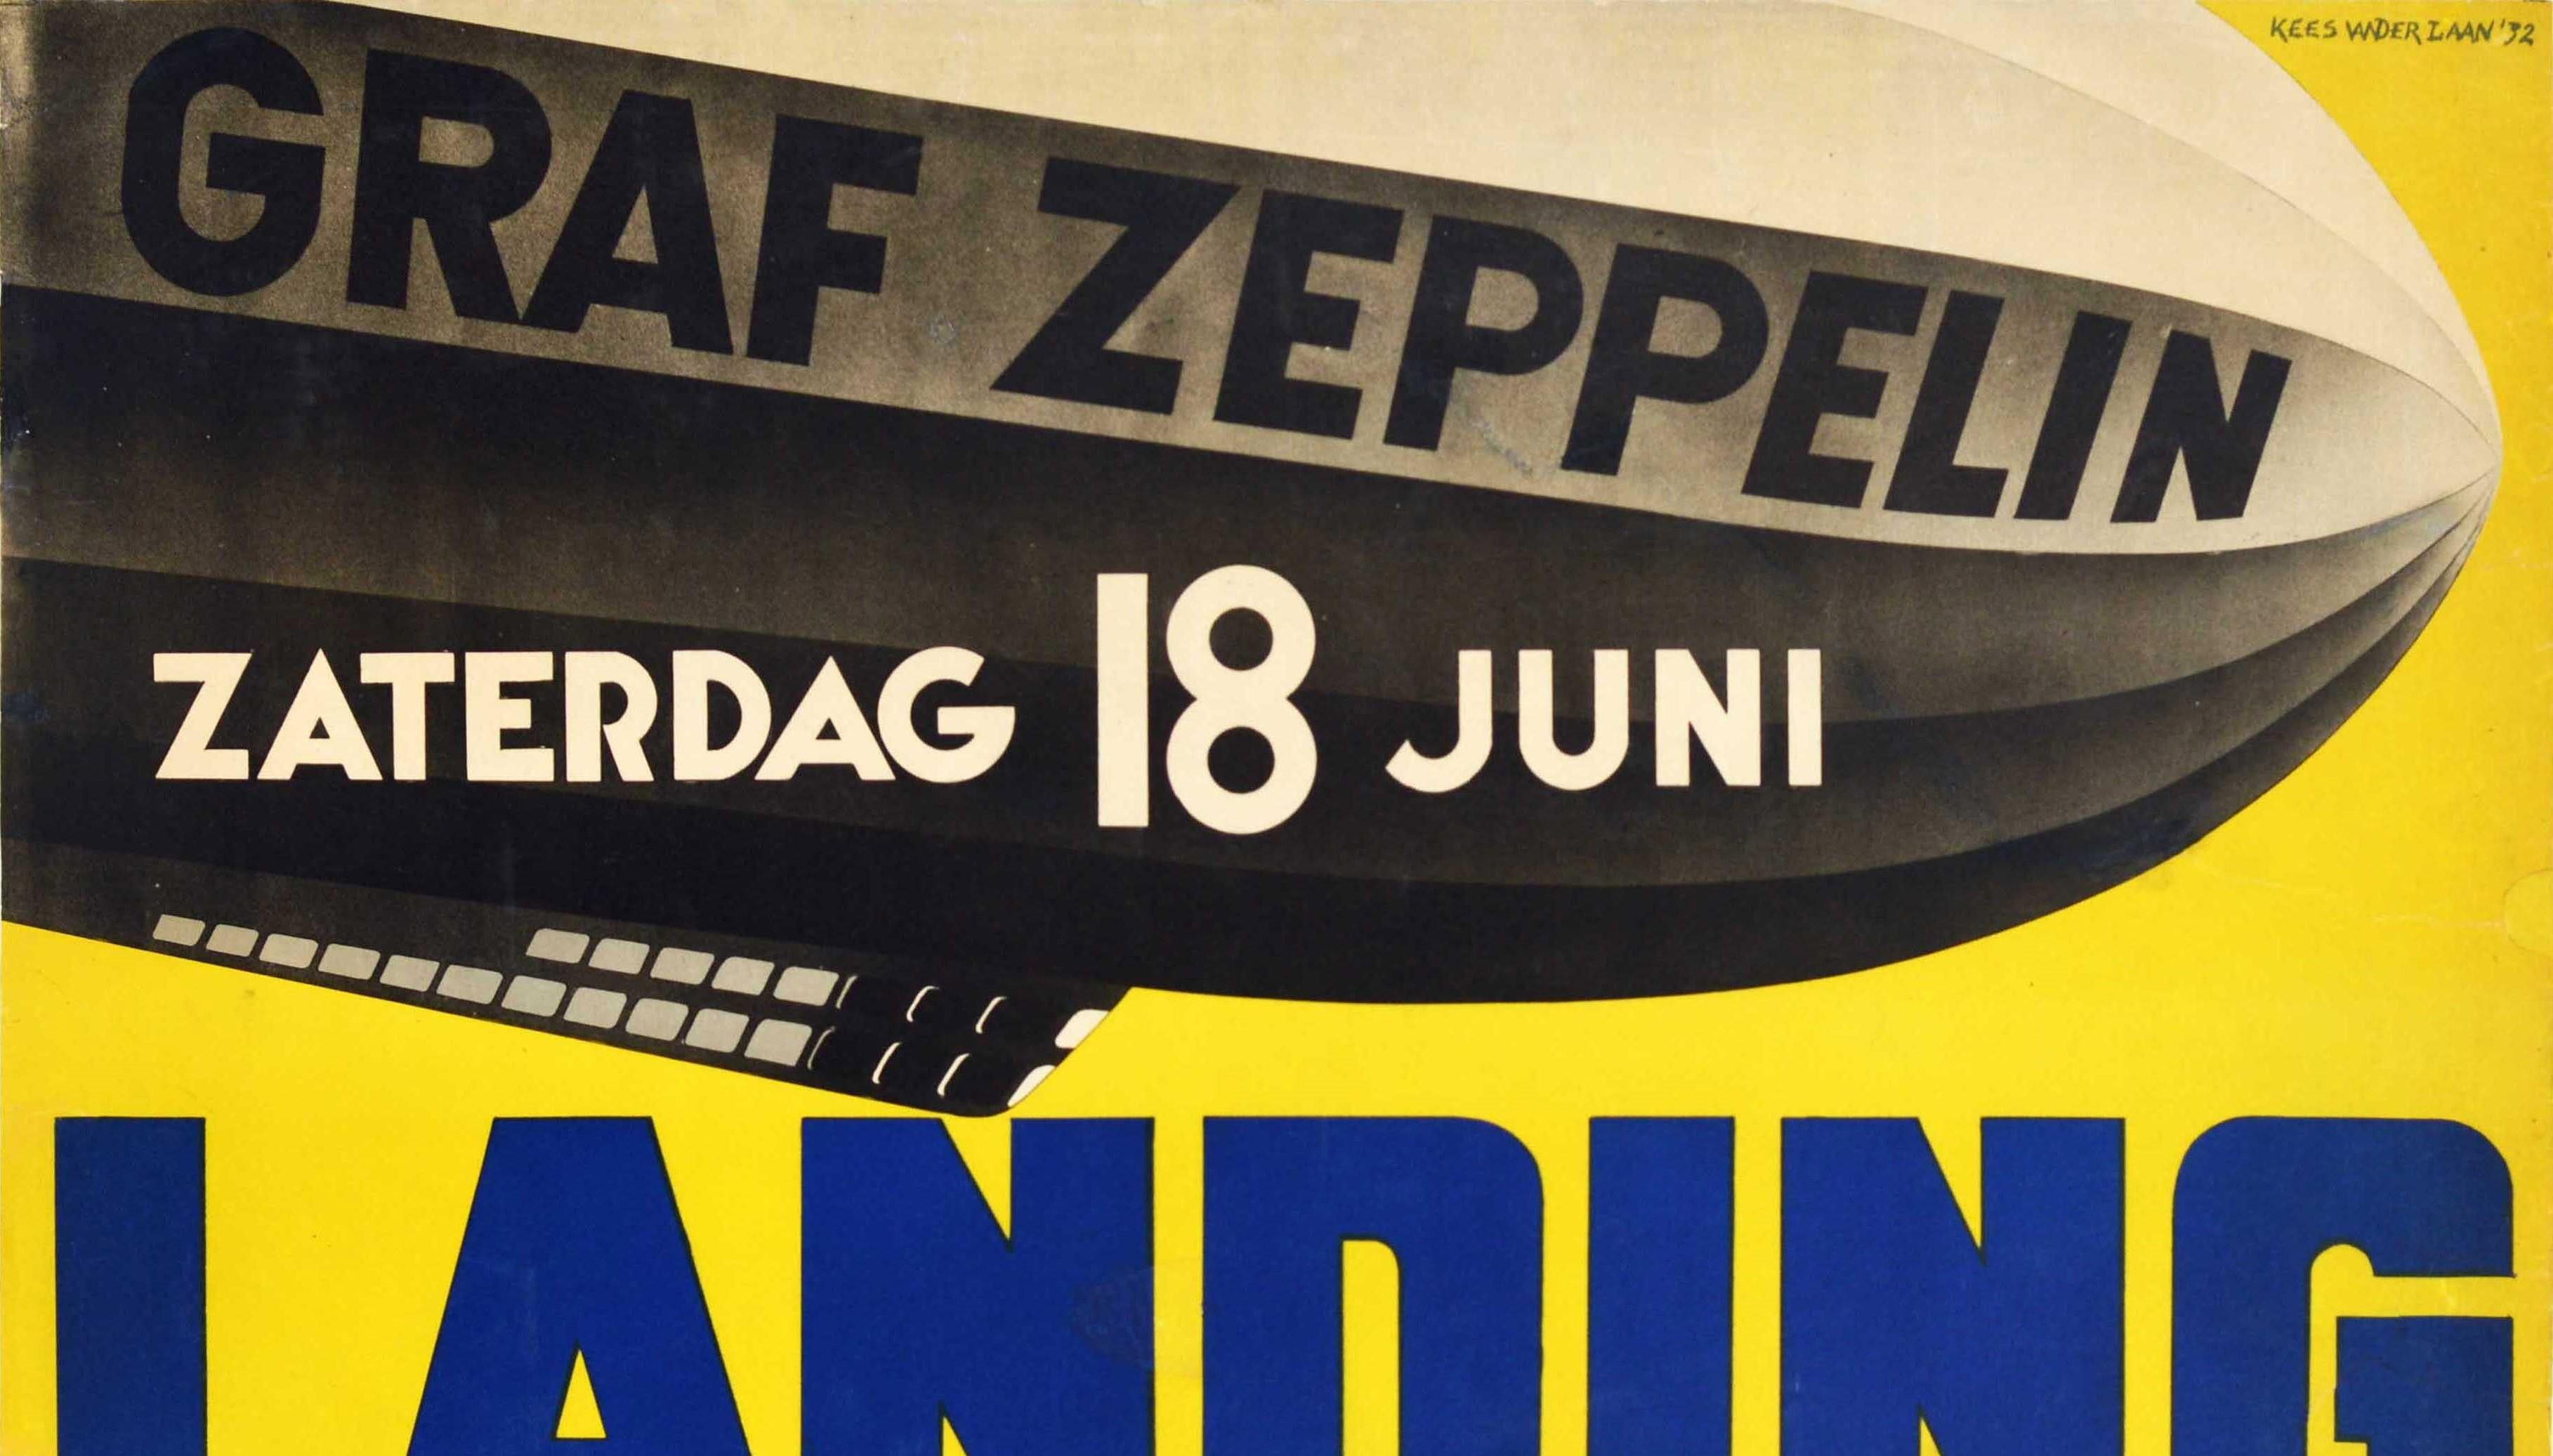  Original Vintage Poster For Graf Zeppelin Landing Vliegvelden Waalhaven Twente - Print by Kees van der Laan